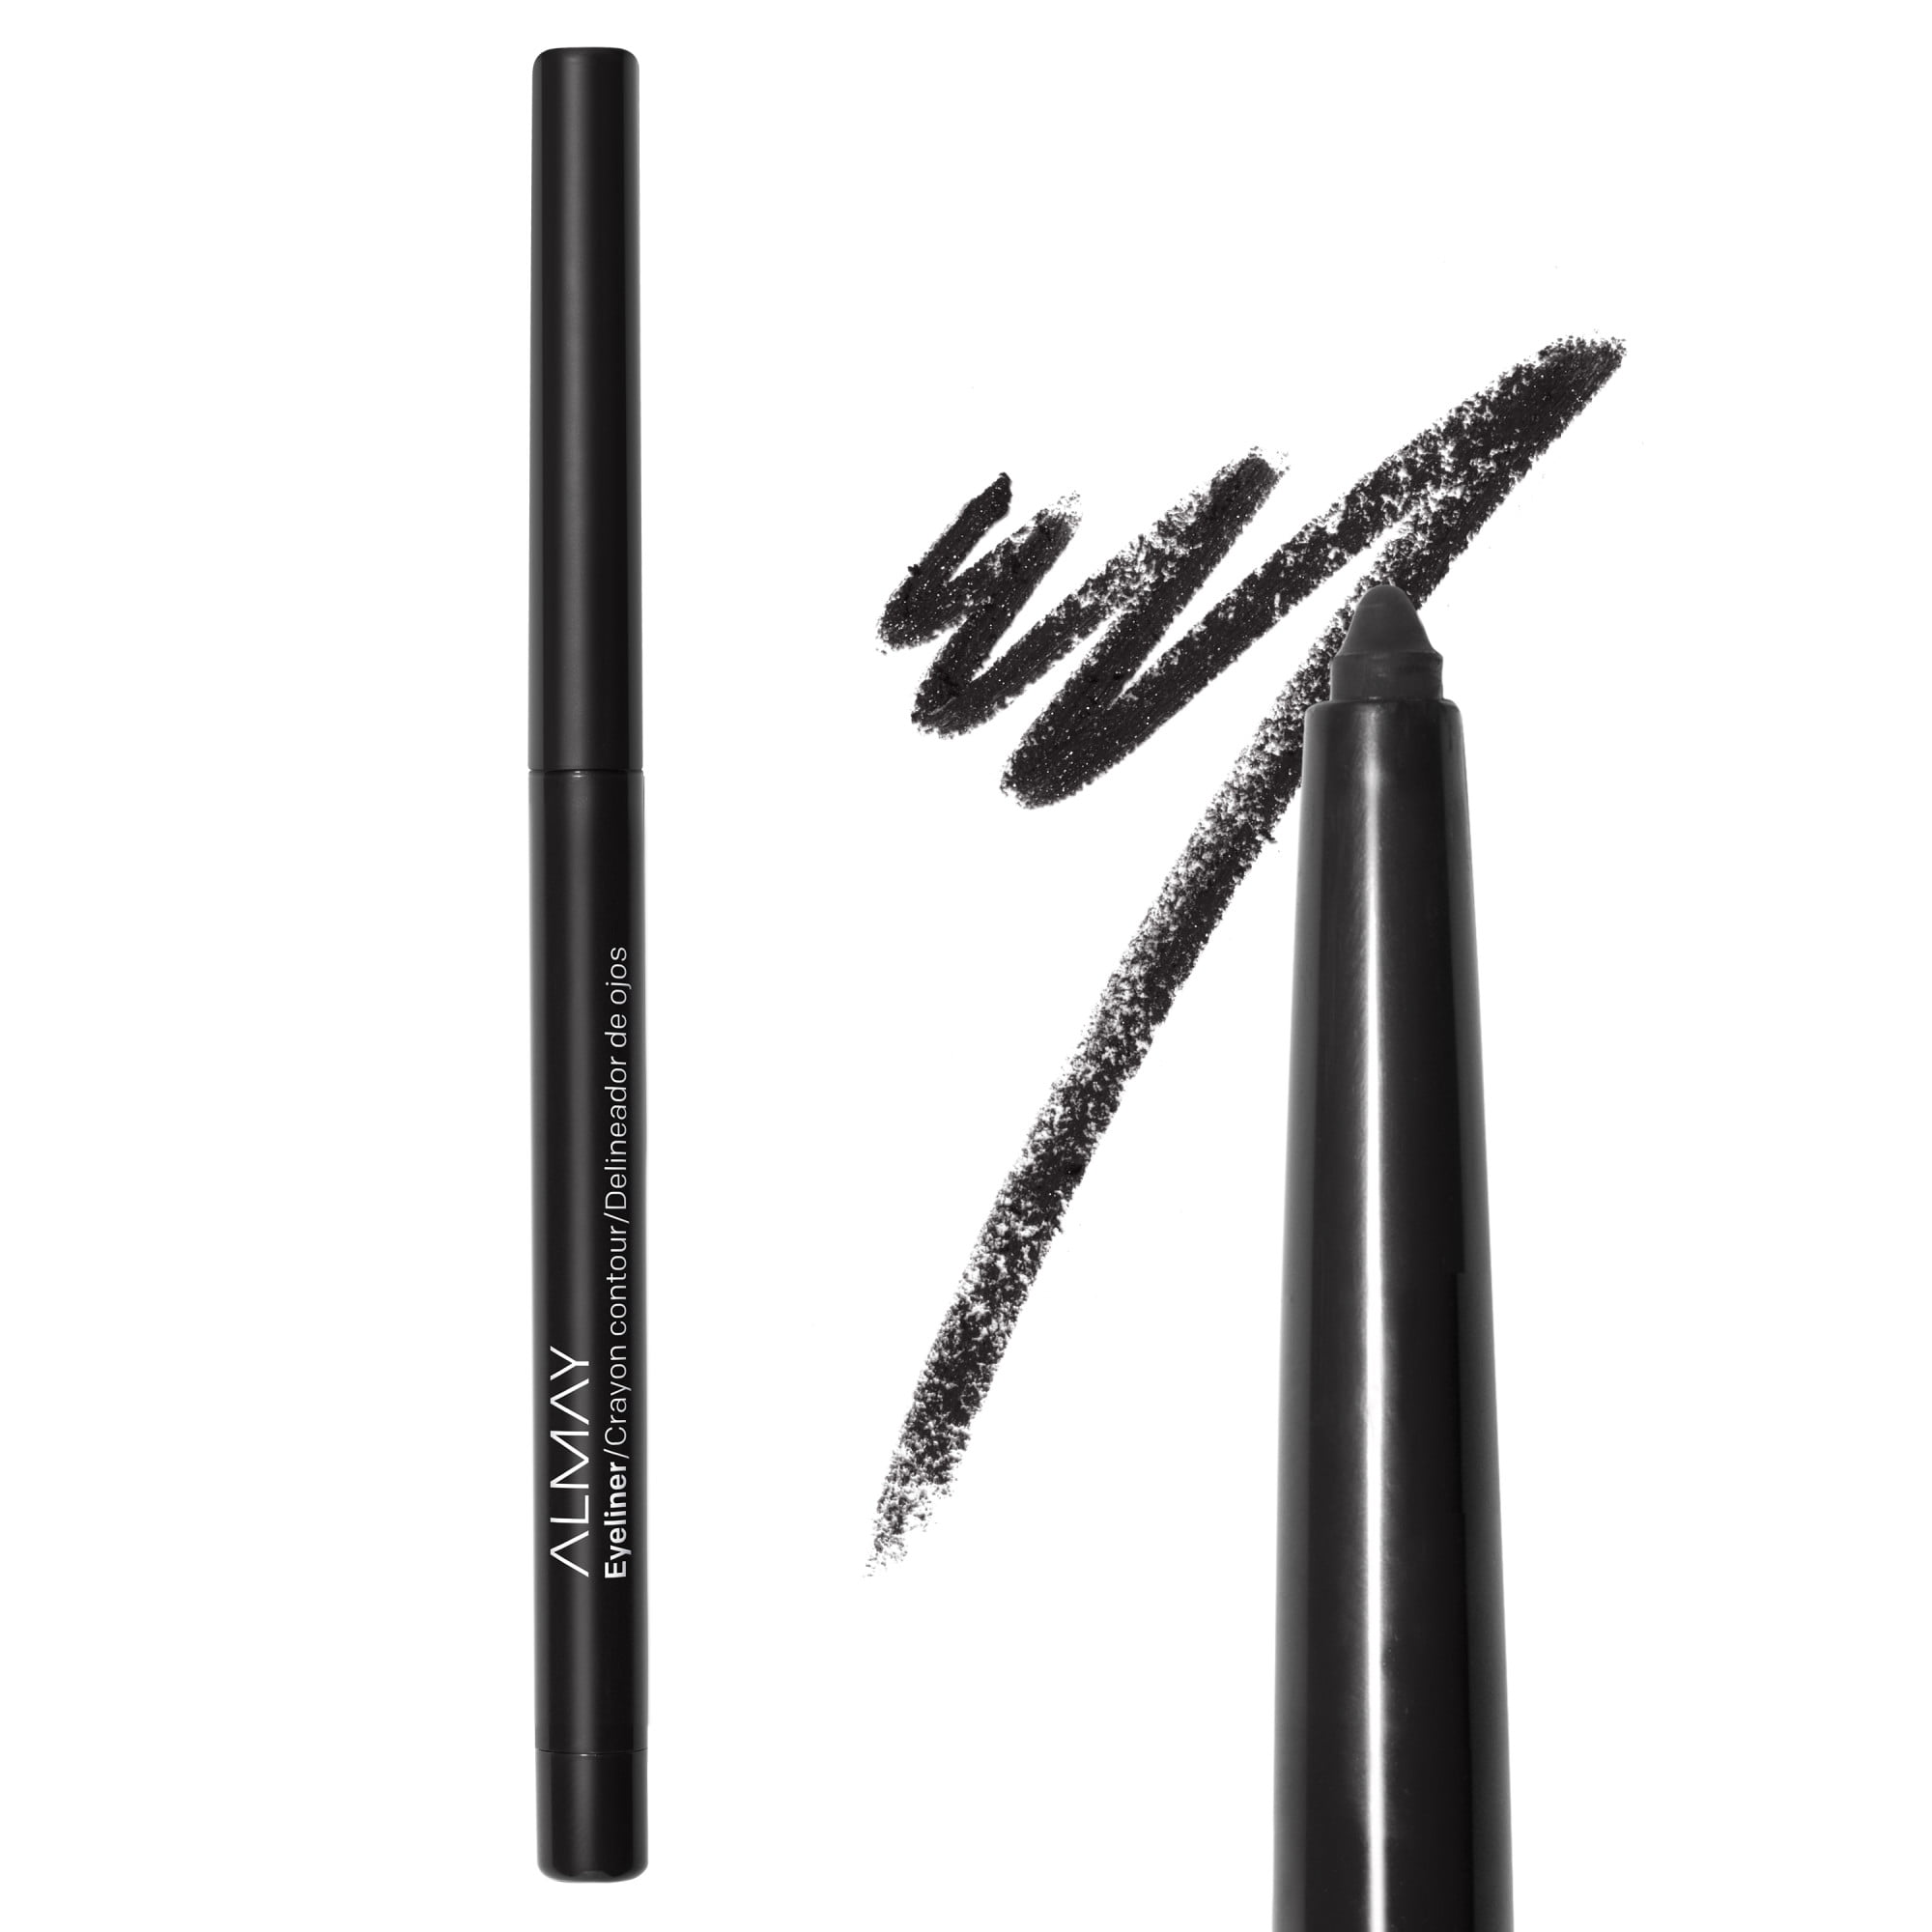 Almay Crayon Contour Water Resistant Eyeliner Pencil, 205 Black - image 5 of 14